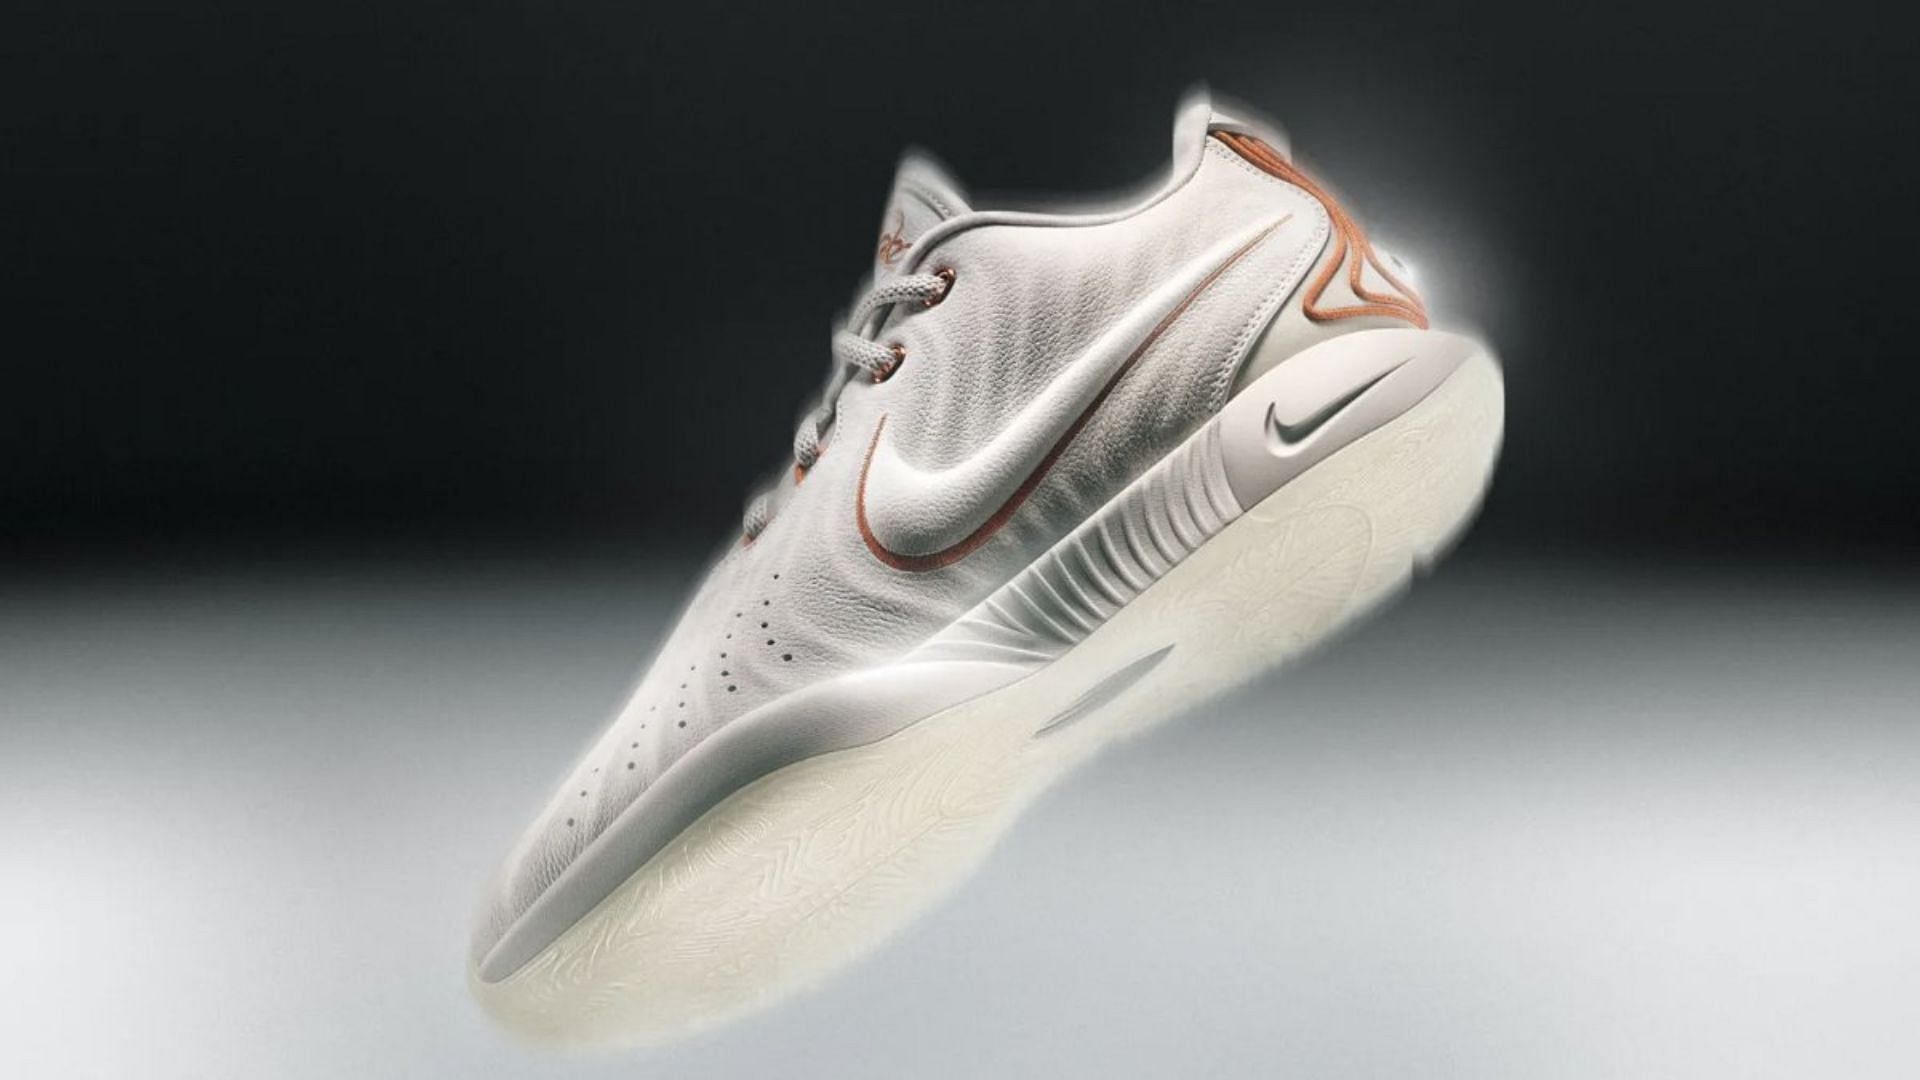 Nike LeBron 21 sneakers (Image via Nike)